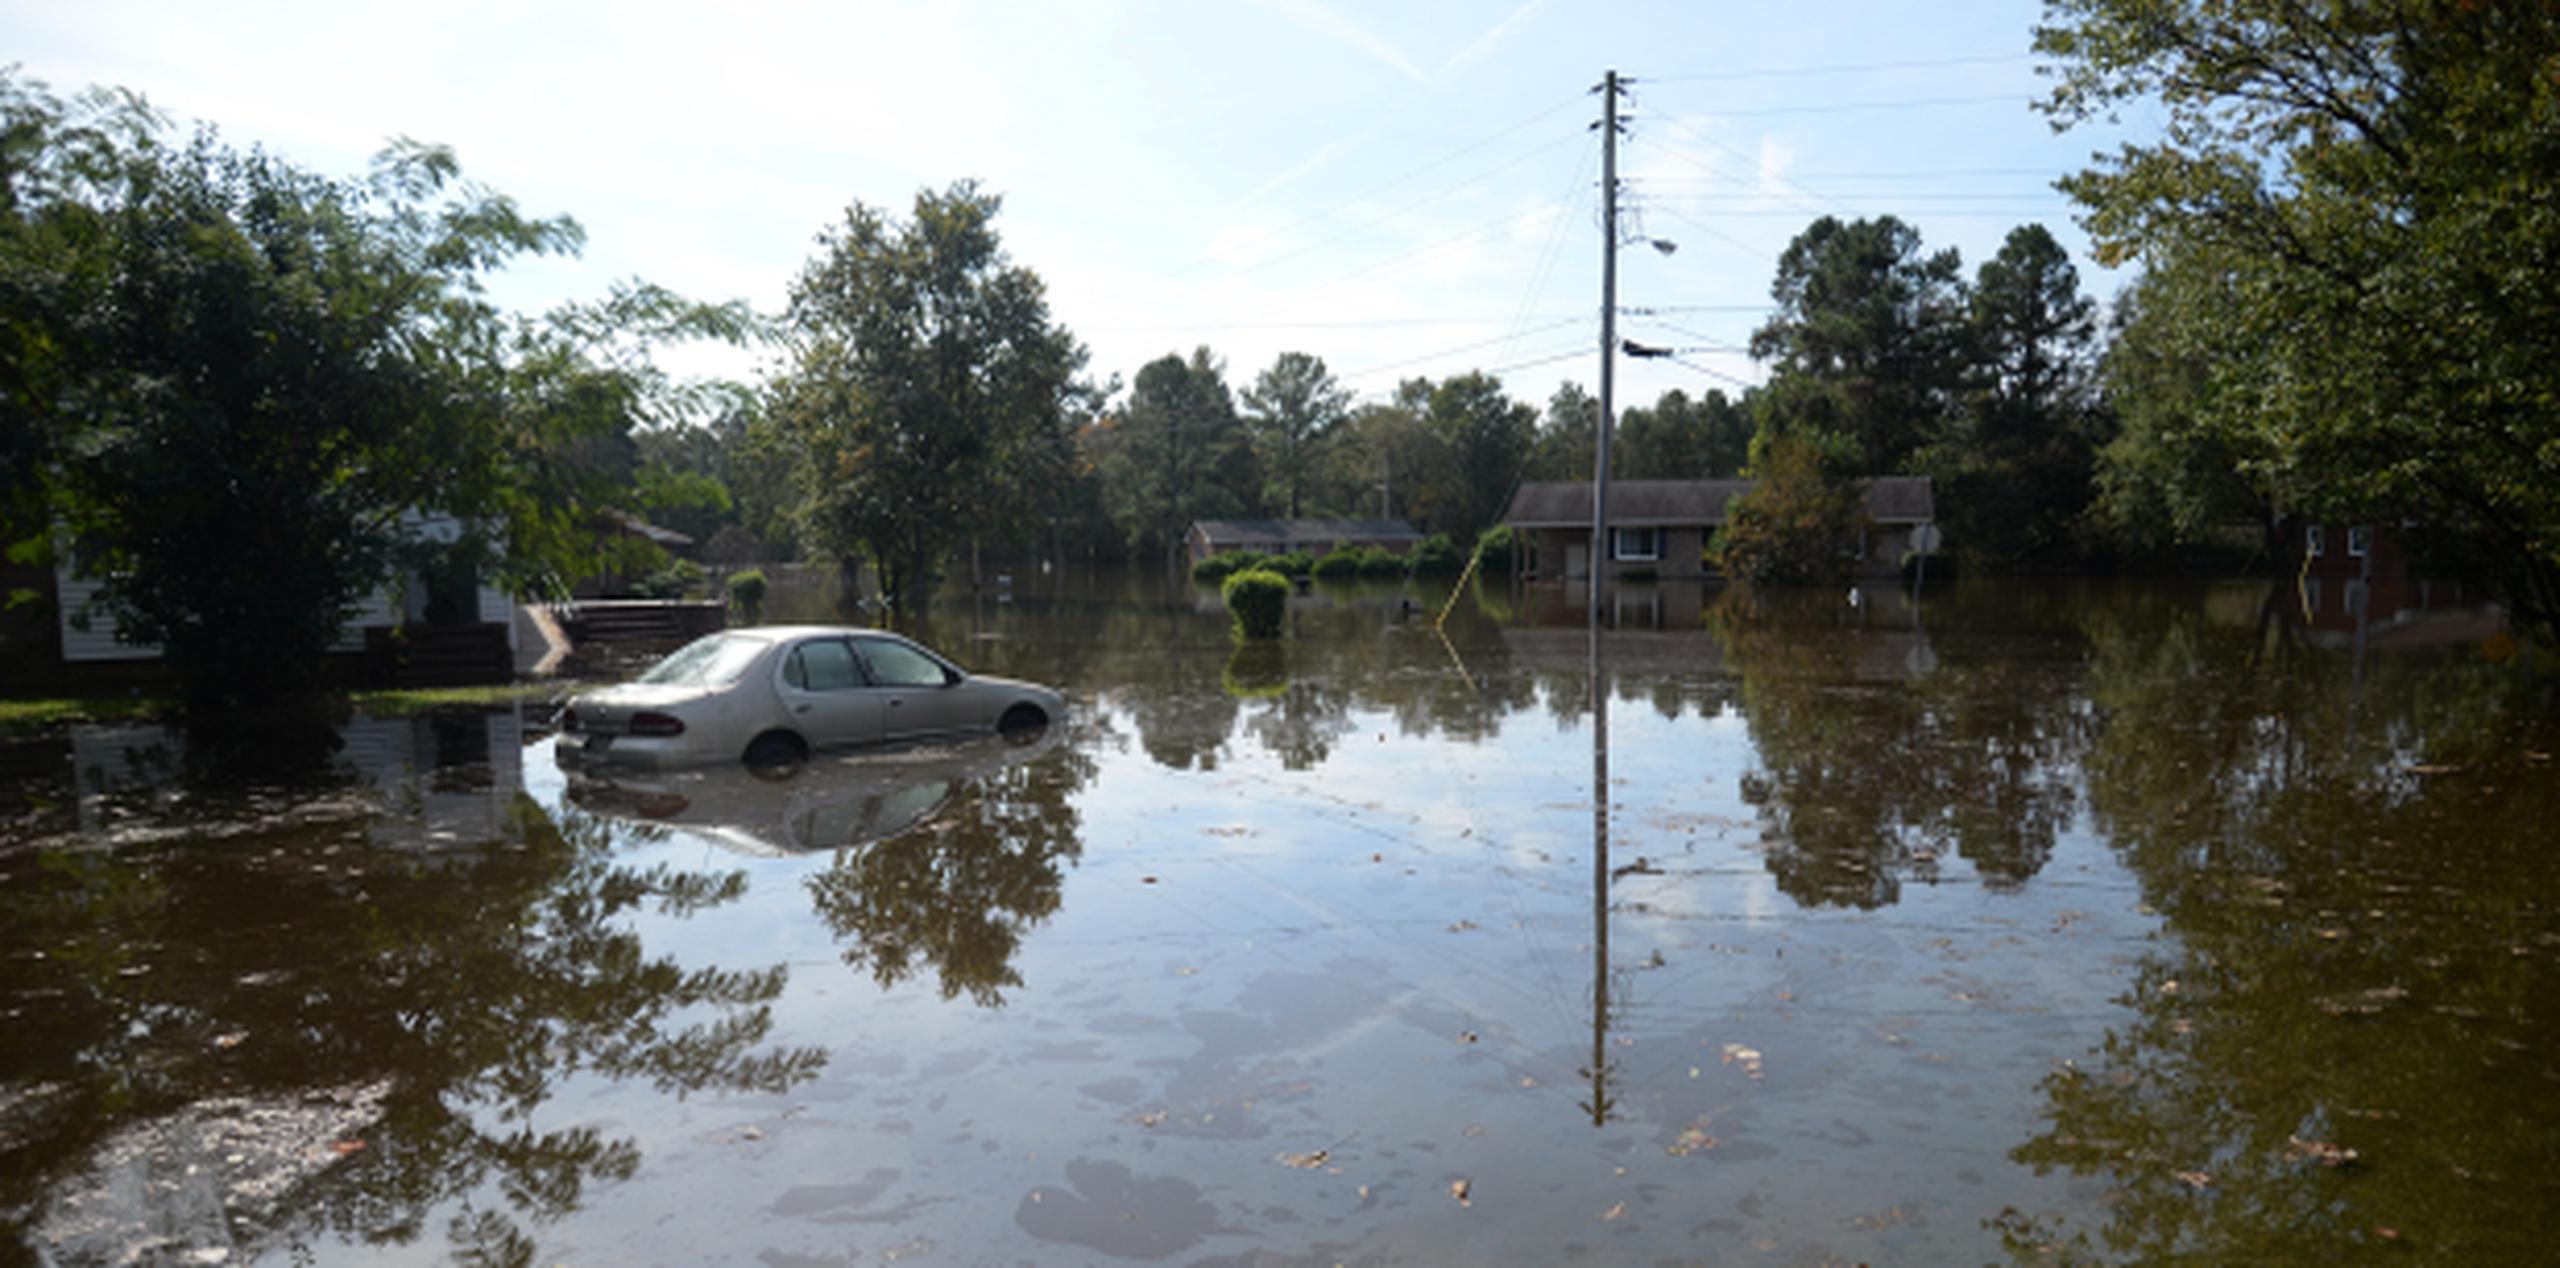 Las compañías de seguros de Carolina del Norte han señalado que Matthew ha provocado un "número récord" de vehículos dañados por las aguas. (Zach Frailey/Daily Free Press vía AP)